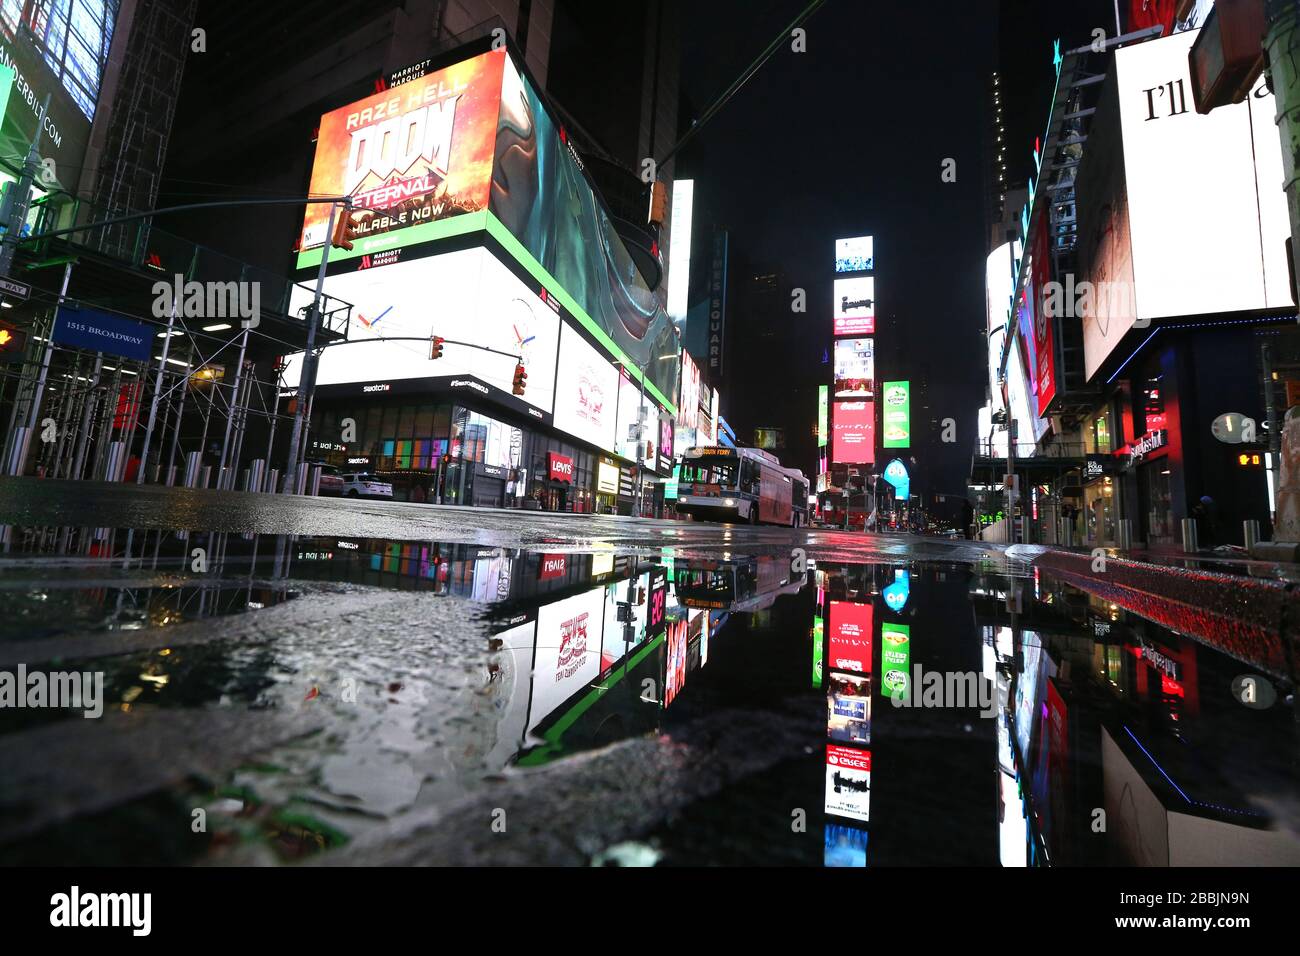 28 marzo 2020, New York, NY, Stati Uniti: Un Times Square vuoto in una notte piovosa durante la crisi del COVID-19 o del nuovo coronavirus. (Immagine di credito: © Dan HerrickZUMA Wire) Foto Stock